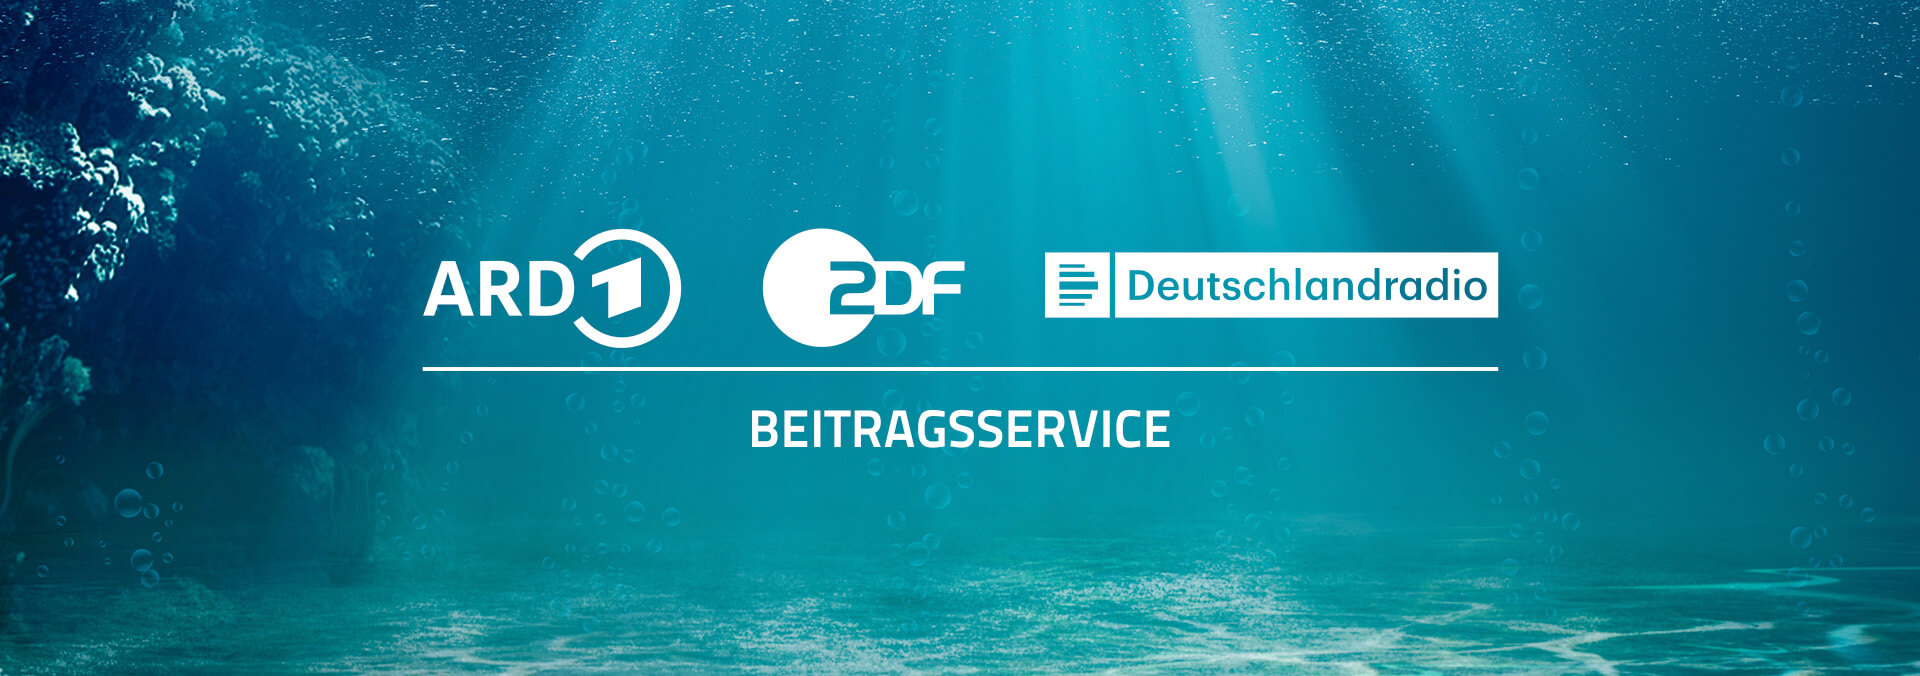 Marketing Kampagne ARD ZDF Beitragsservice Kundencase Softwareeinführung 